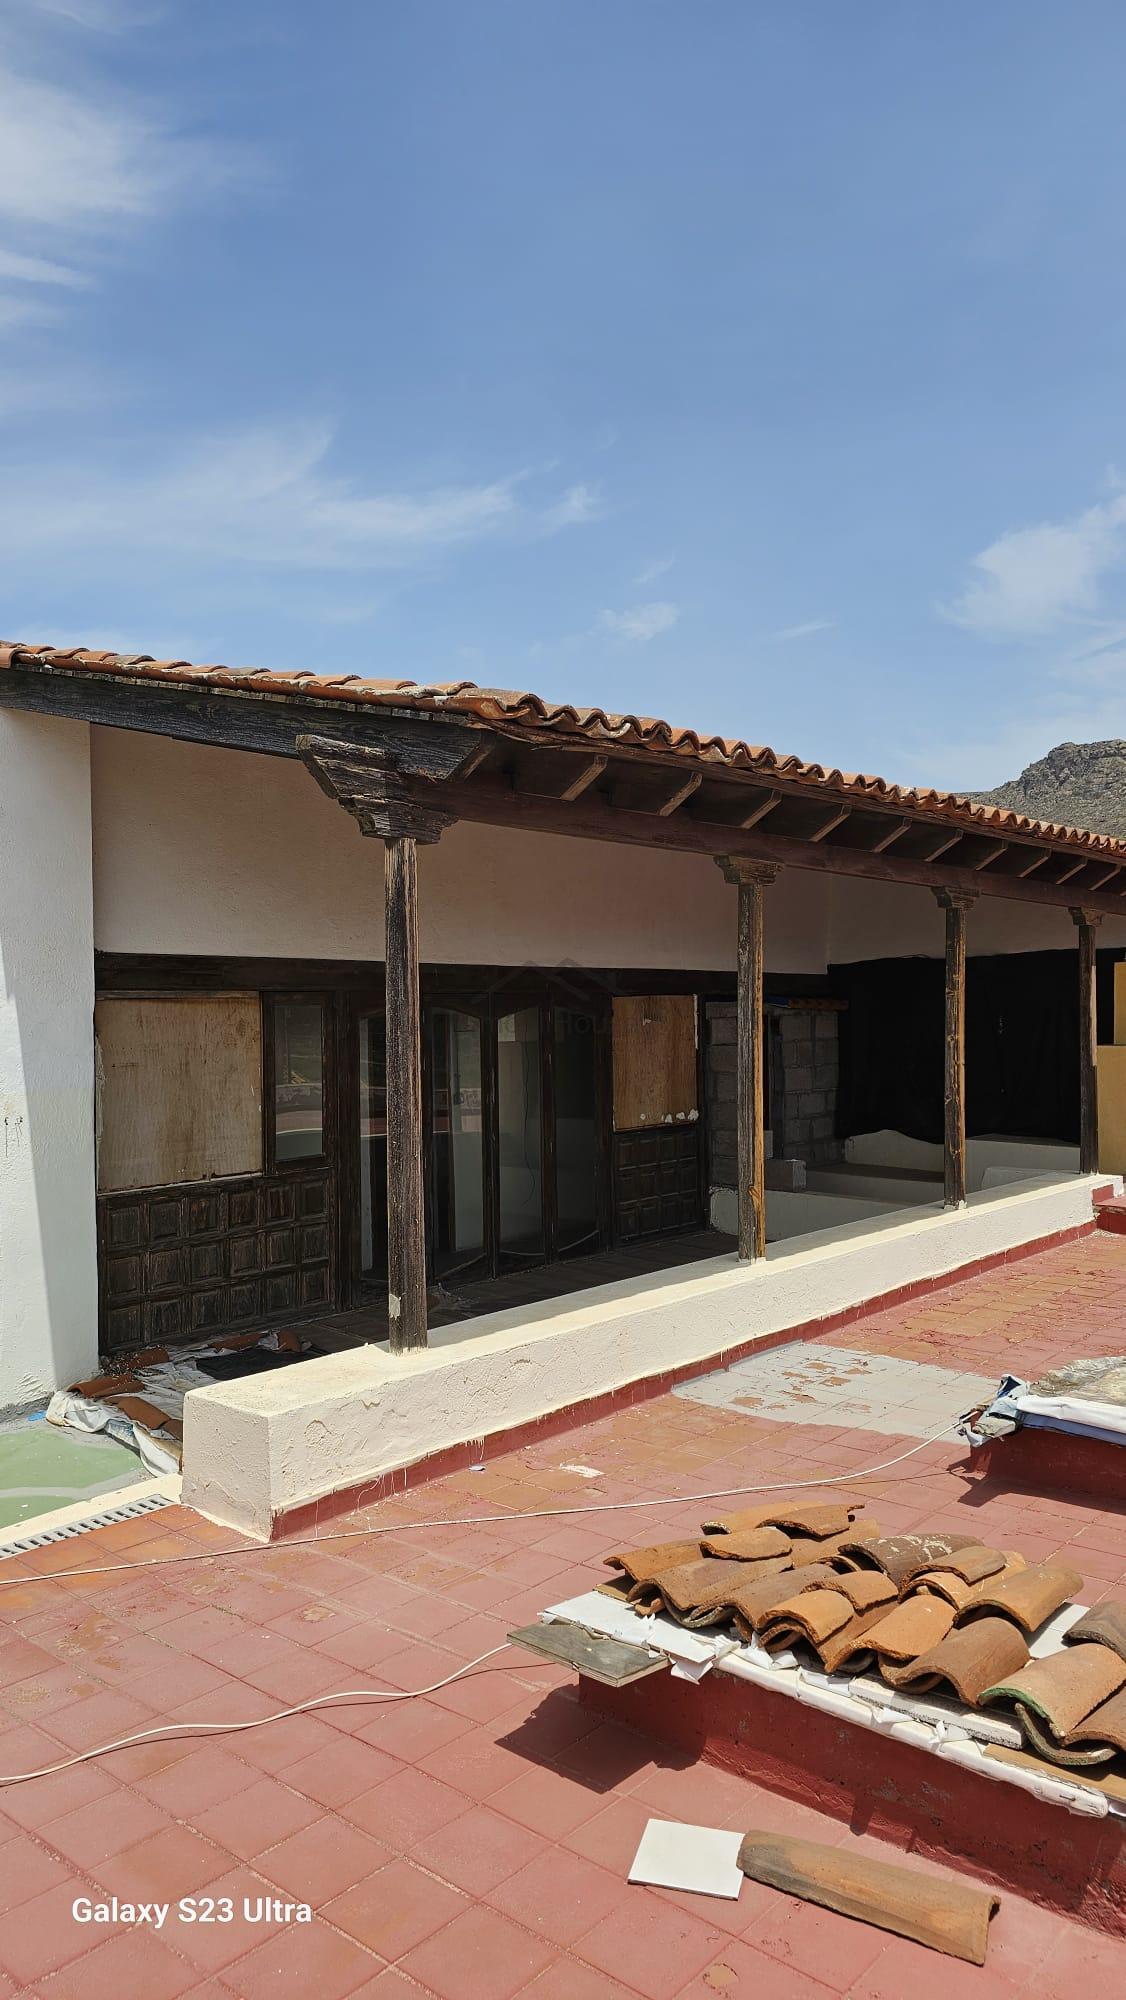 Salg av hus i Valle de San Lorenzo